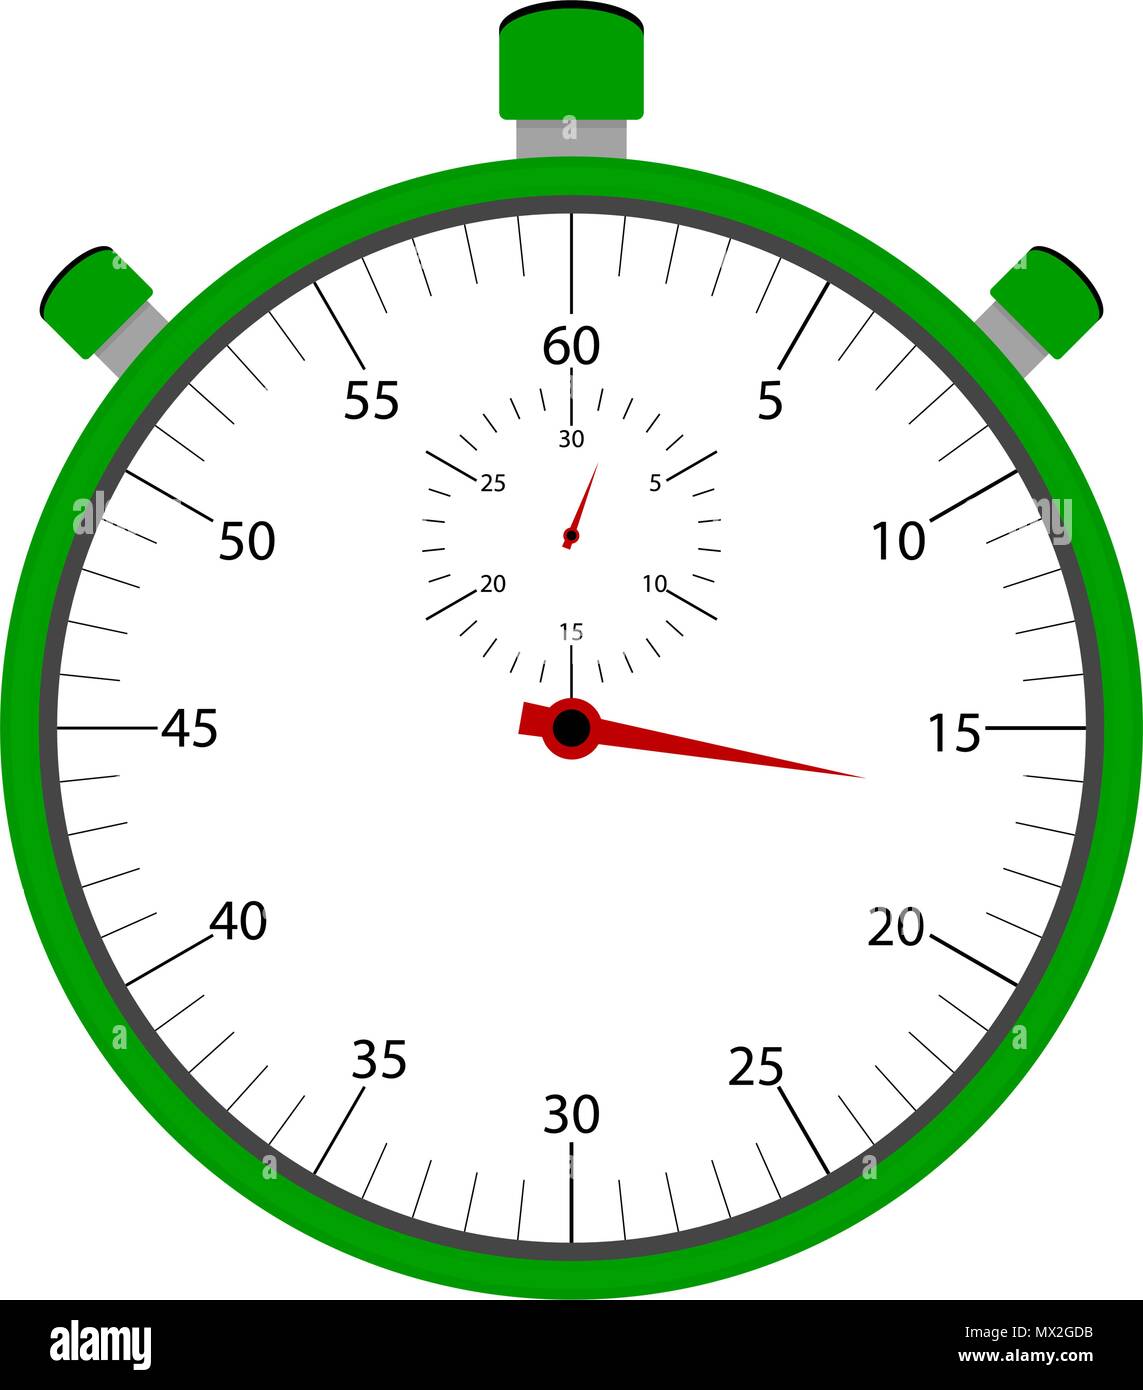 Stoppuhr Element isoliert auf weißem Hintergrund. Stoppuhr und Countdown, Instrument, chronometer, Trainer Ausrüstung, Vektor, Abbildung Stock Vektor